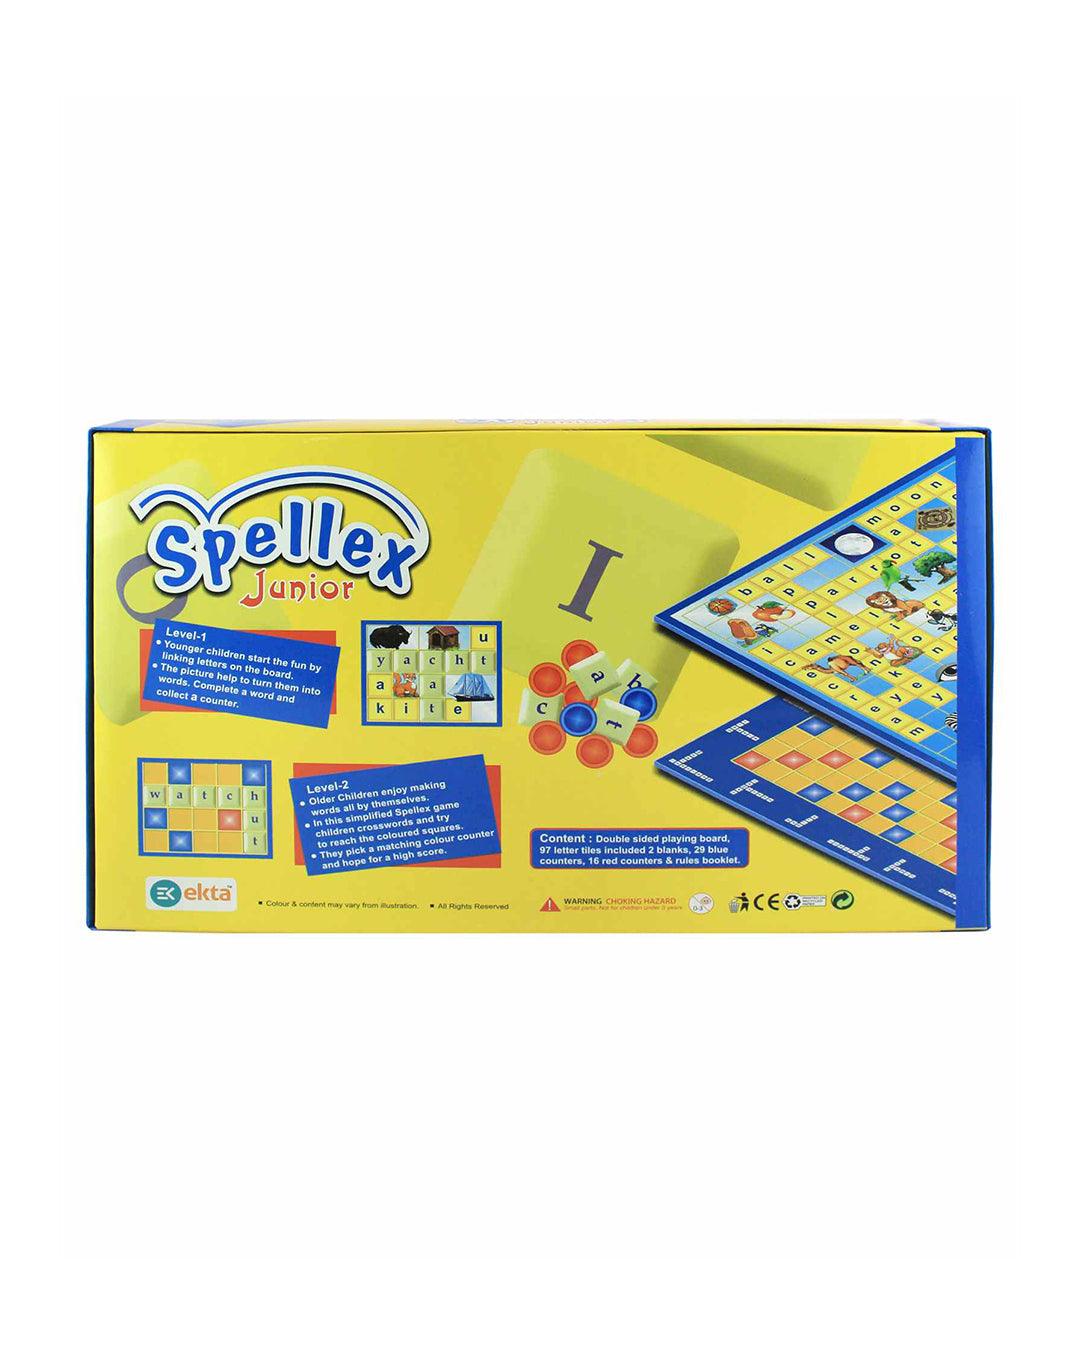 EKTA Spellex Junior Word Board Game - For Child Age 8 & Up (2-6 Players) - MARKET 99